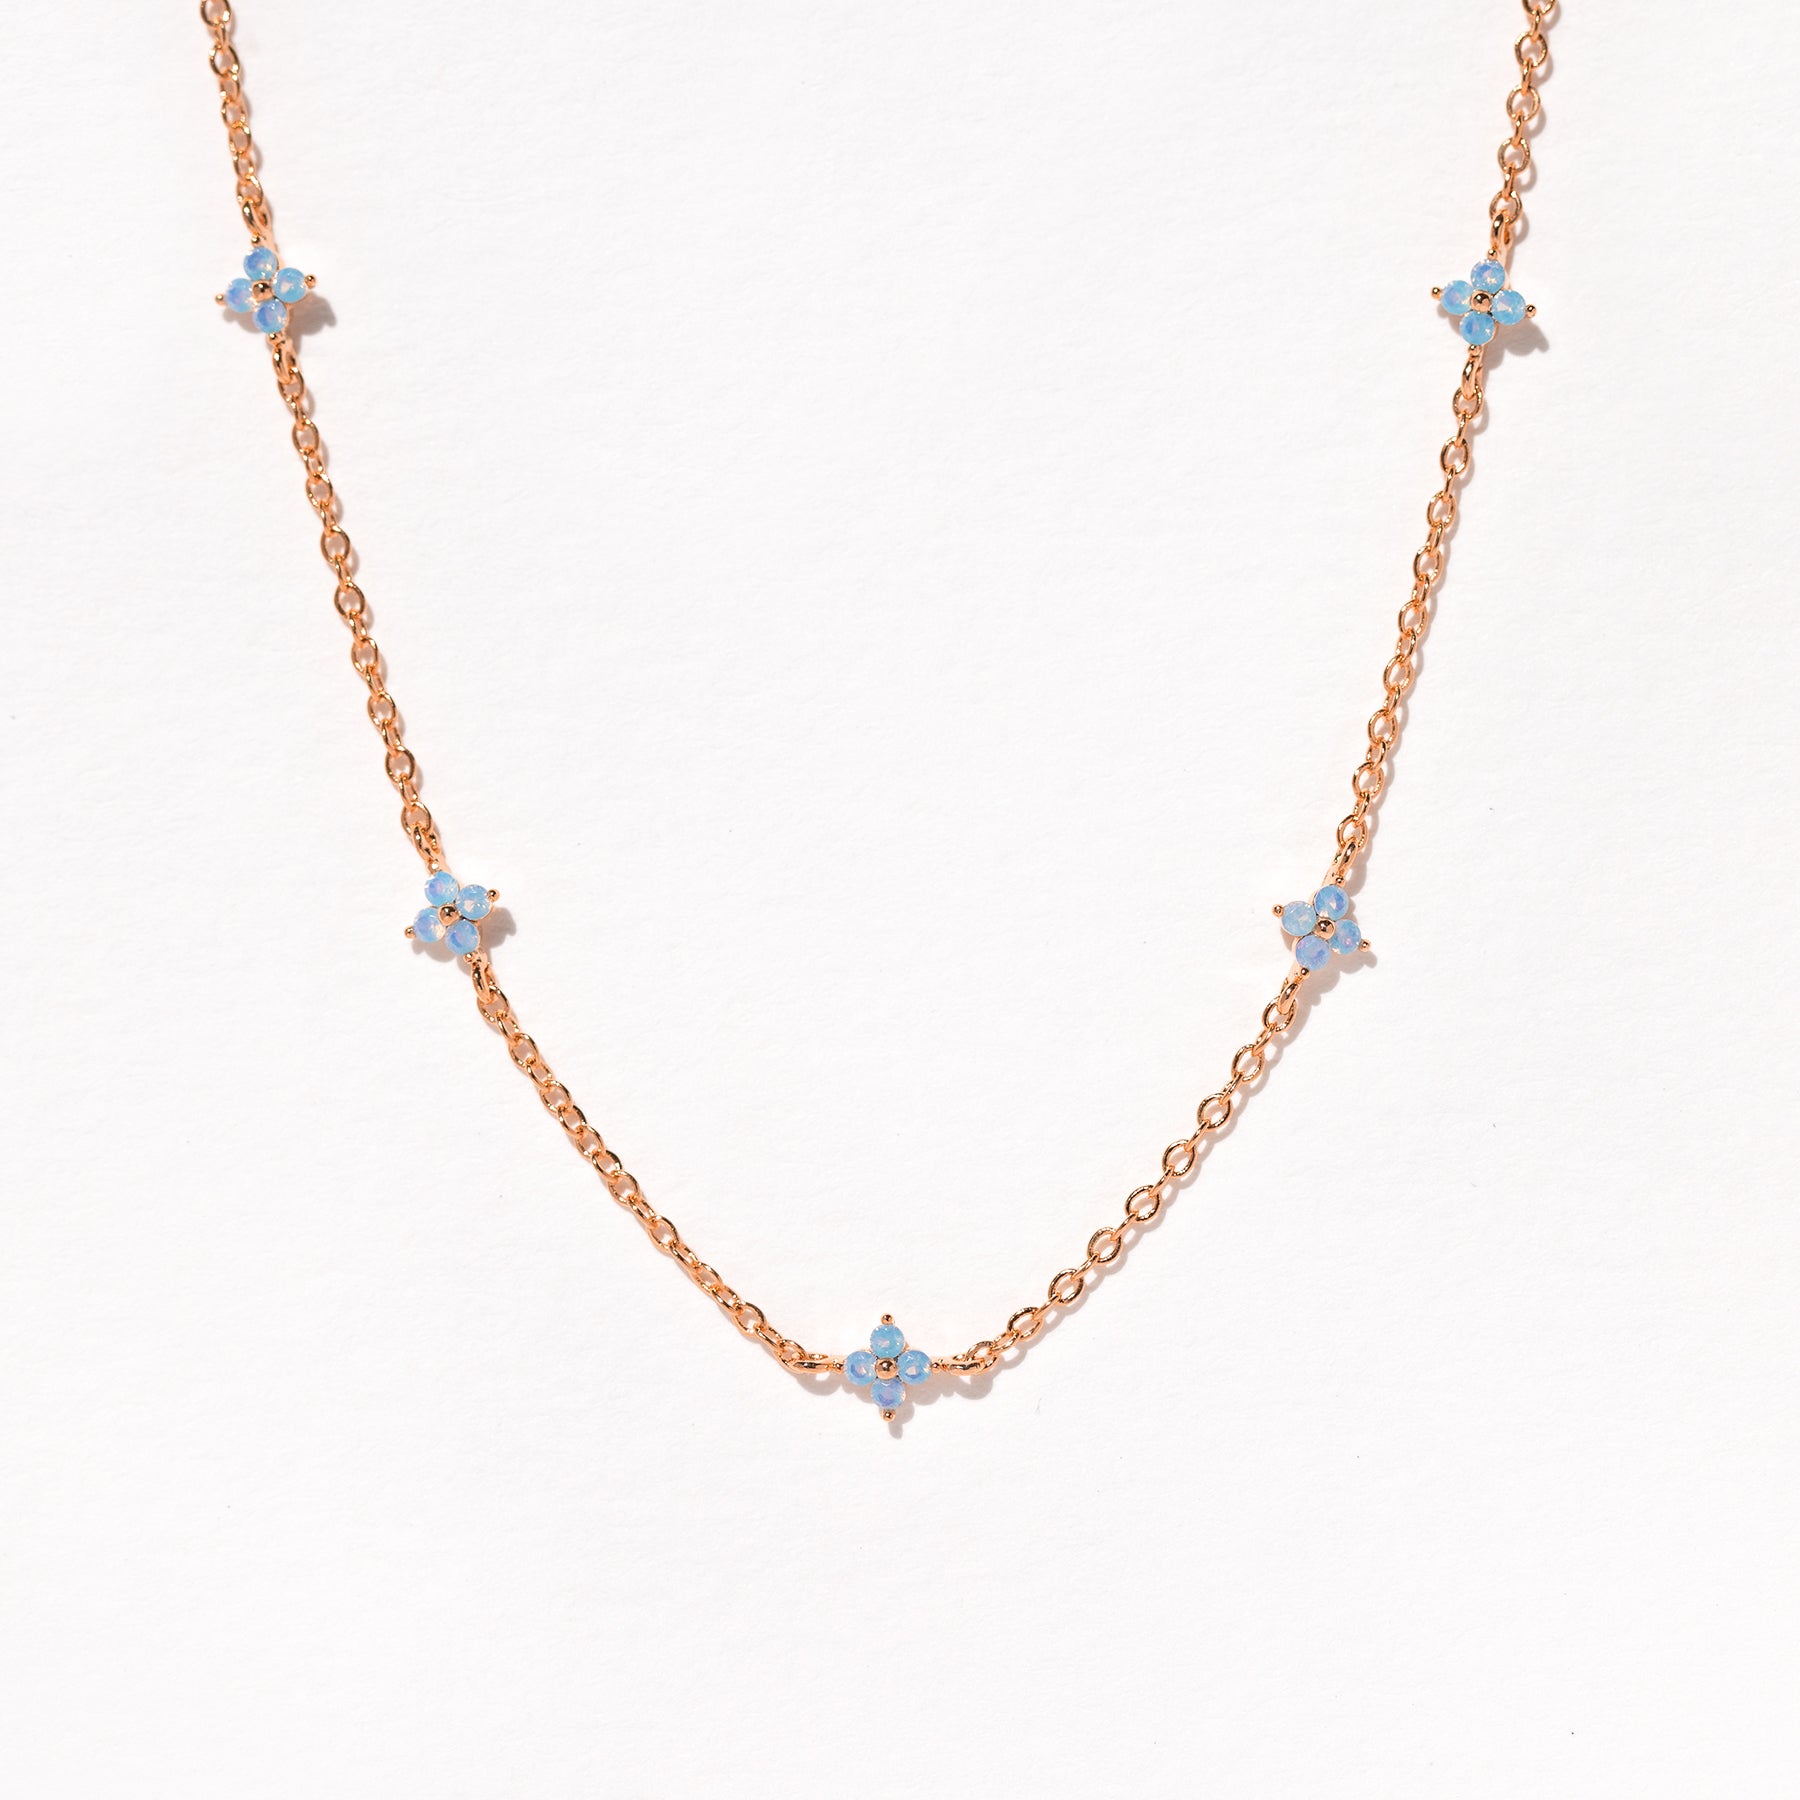 Louis Vuitton flower necklaces